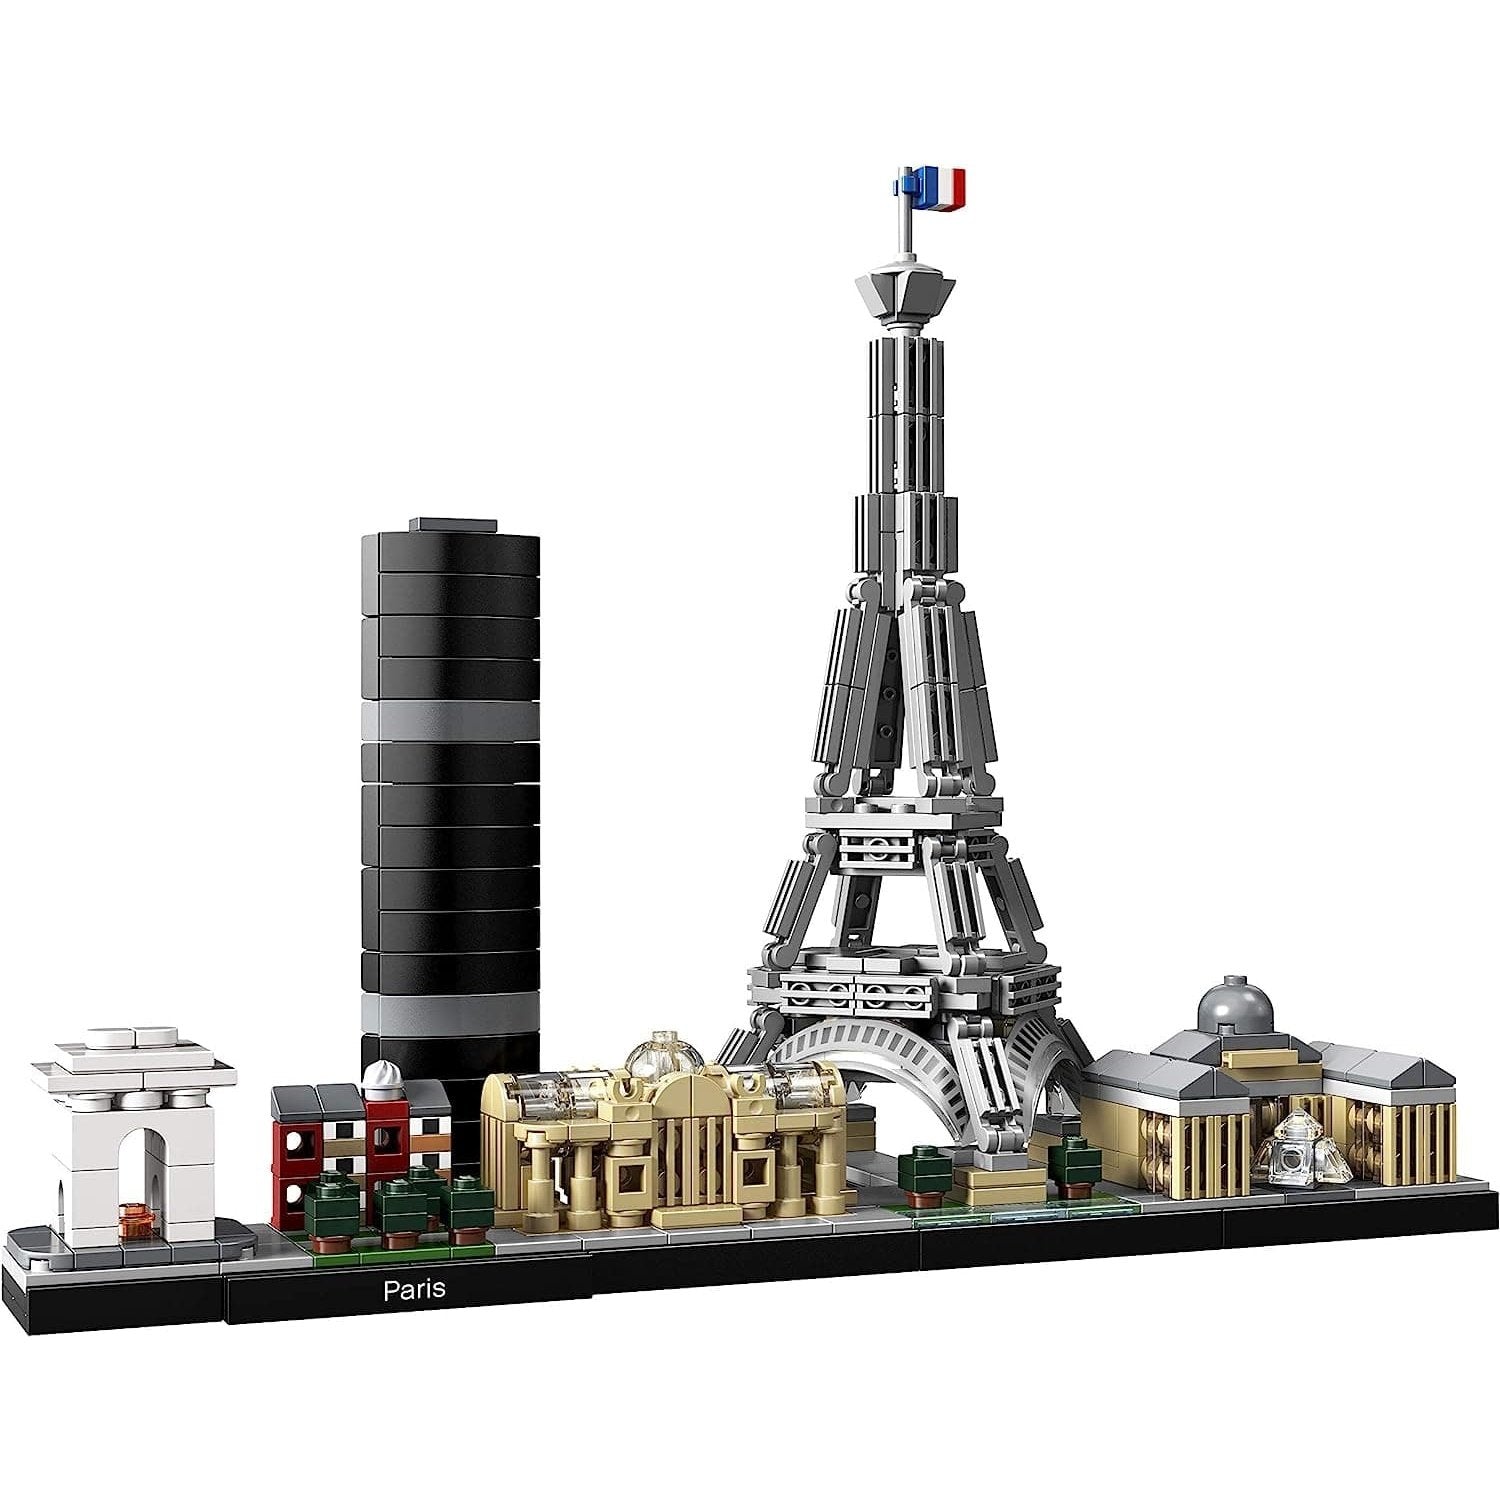 LEGO Architecture City Buildings Collection Paris Construction Kit 21044 LEGO